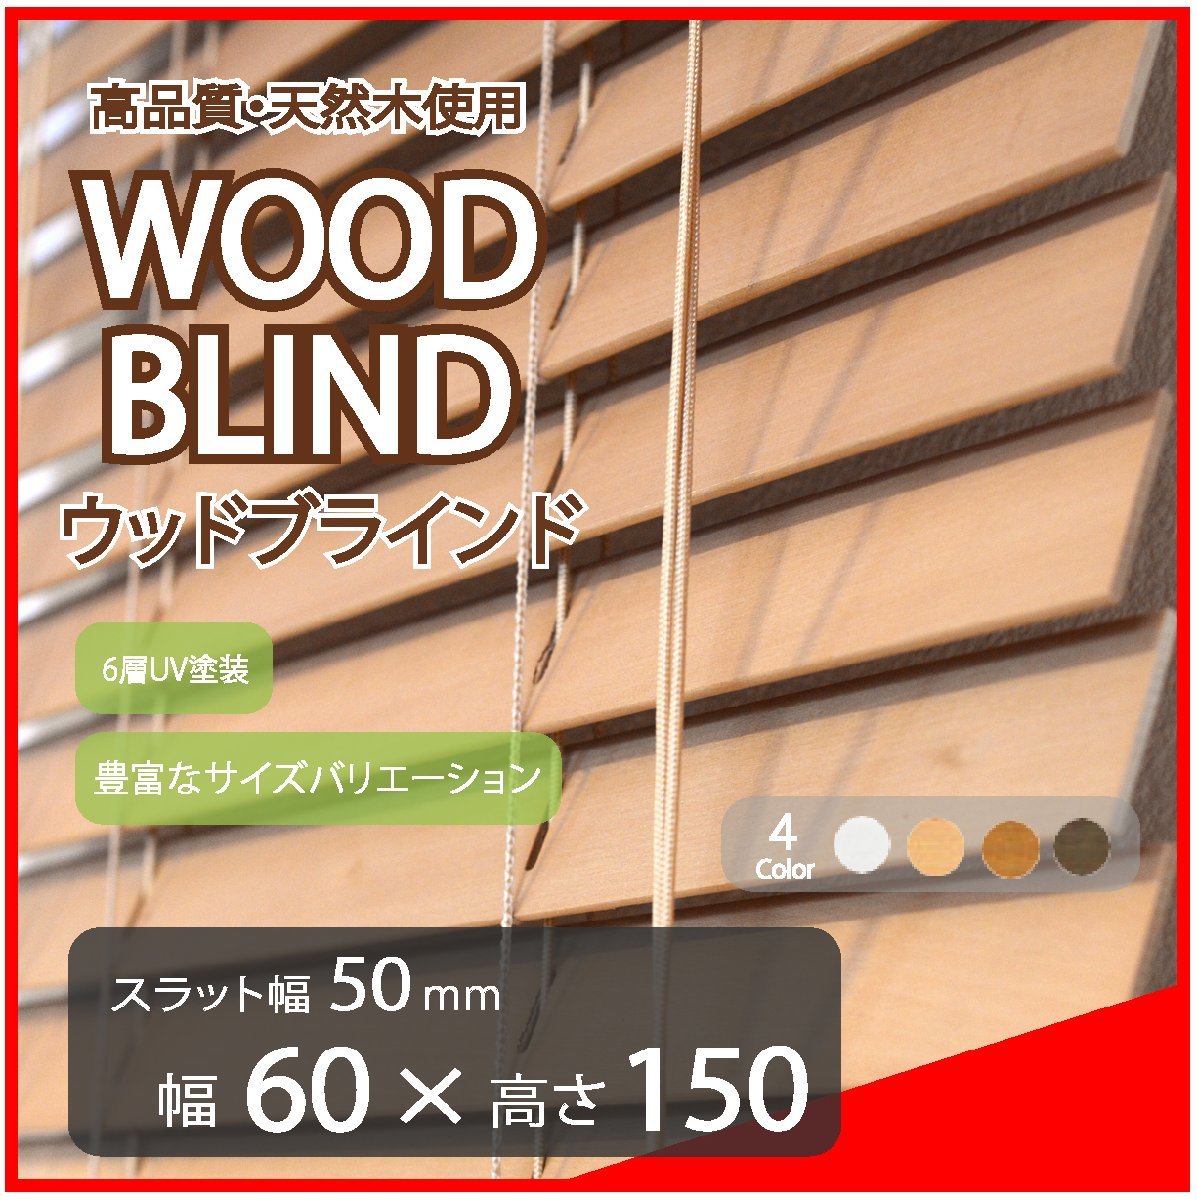 高品質 ウッドブラインド 木製 ブラインド 既成サイズ スラット(羽根)幅50mm 幅60cm×高さ150cm ライトブラウン